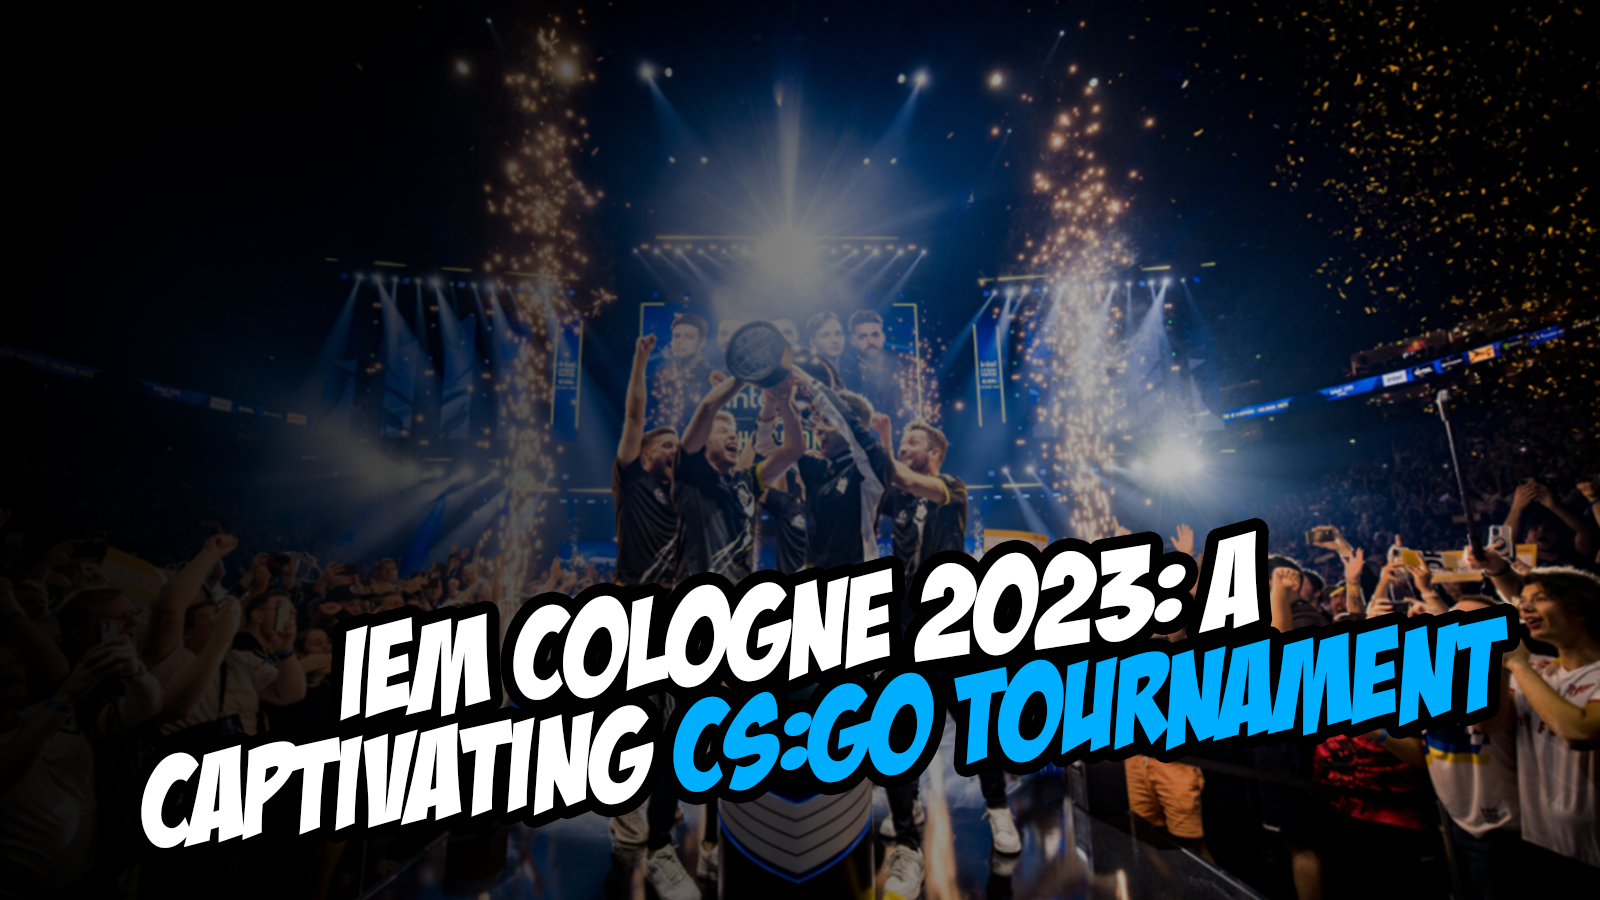 IEM Cologne 2023: A Captivating CS:GO Tournament